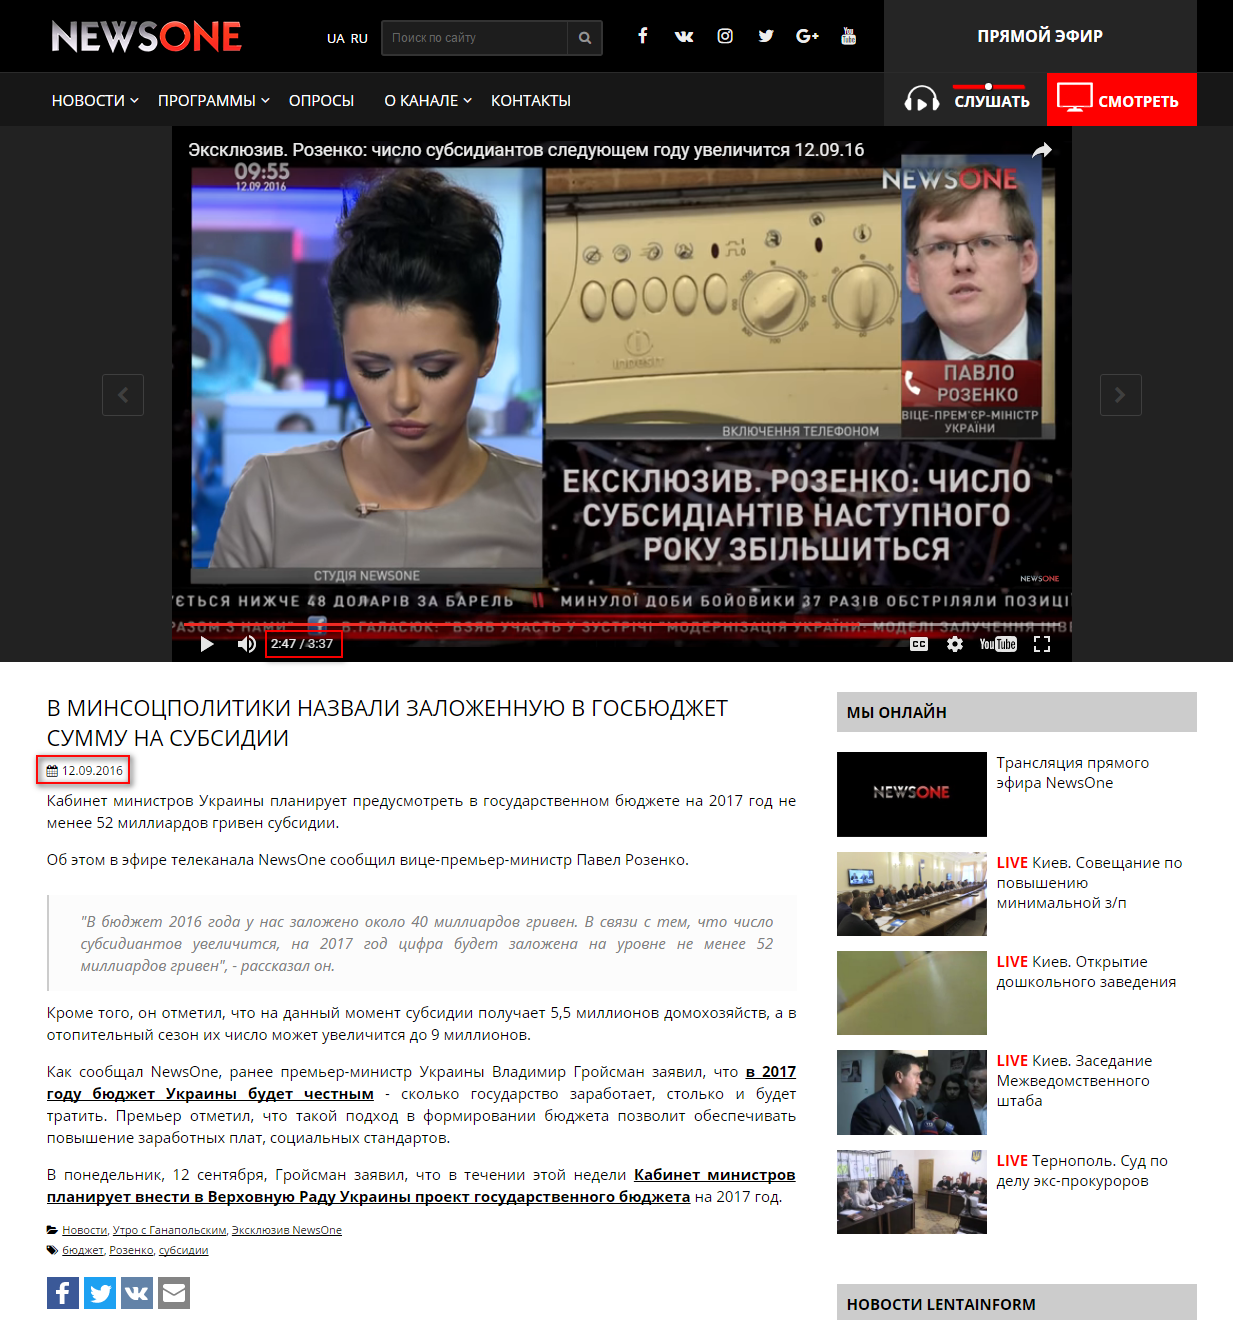 http://newsone.ua/ru/rozenko-v-gosbyudzhete-na-2017-god-budet-predusmotreno-ne-menee-52-mlrd-grn-na-subsidii/